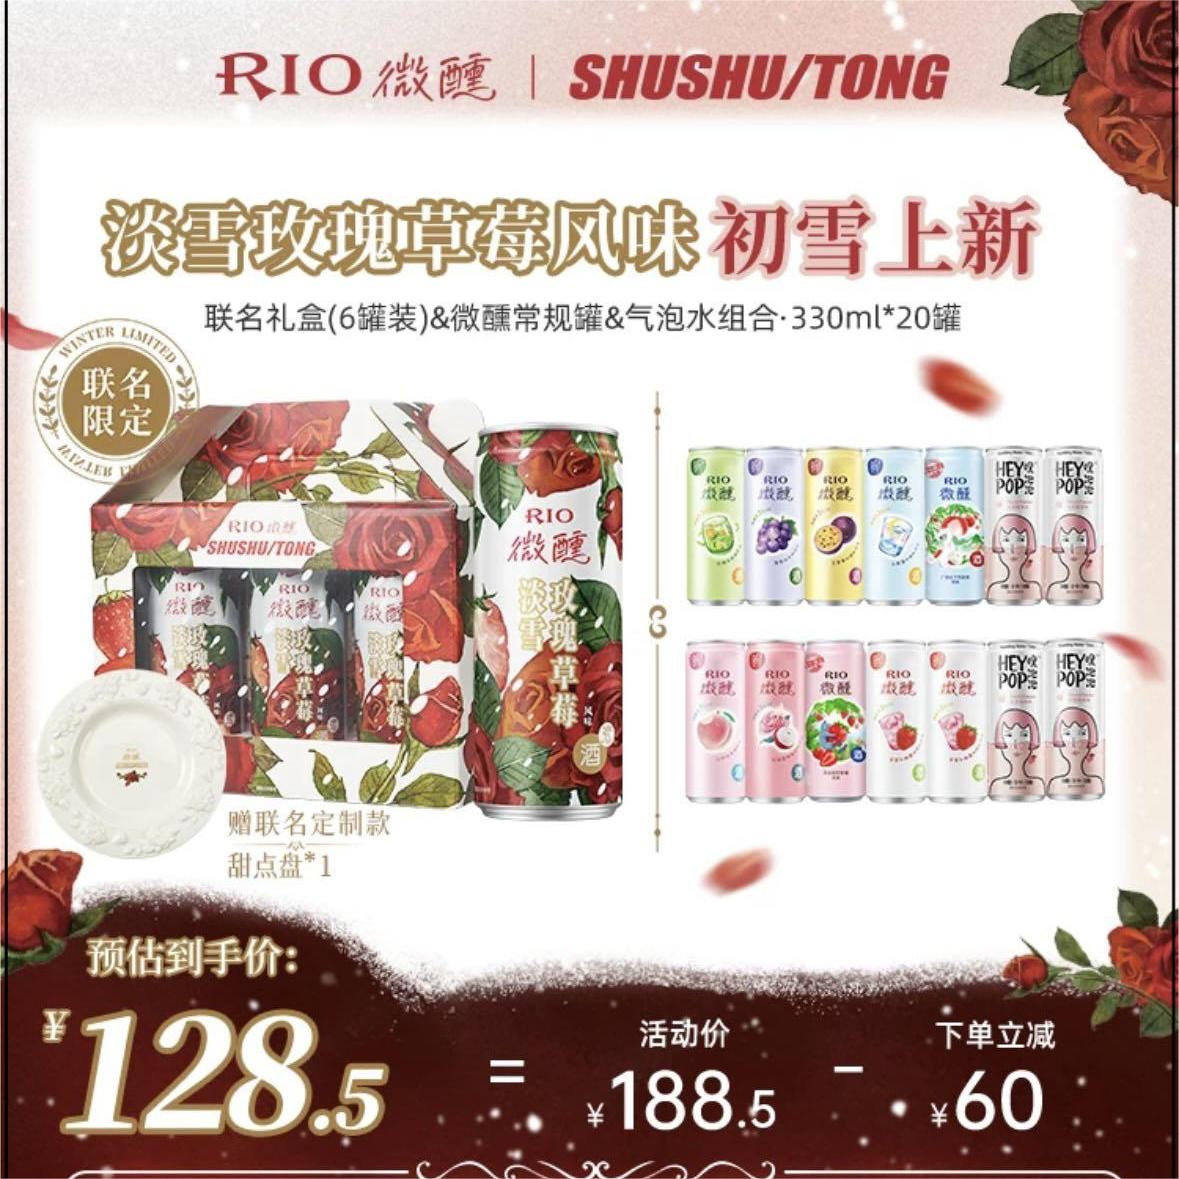 【SHUSHU/TONG联名】RIO预调鸡尾酒微醺气泡水组合20罐/24罐